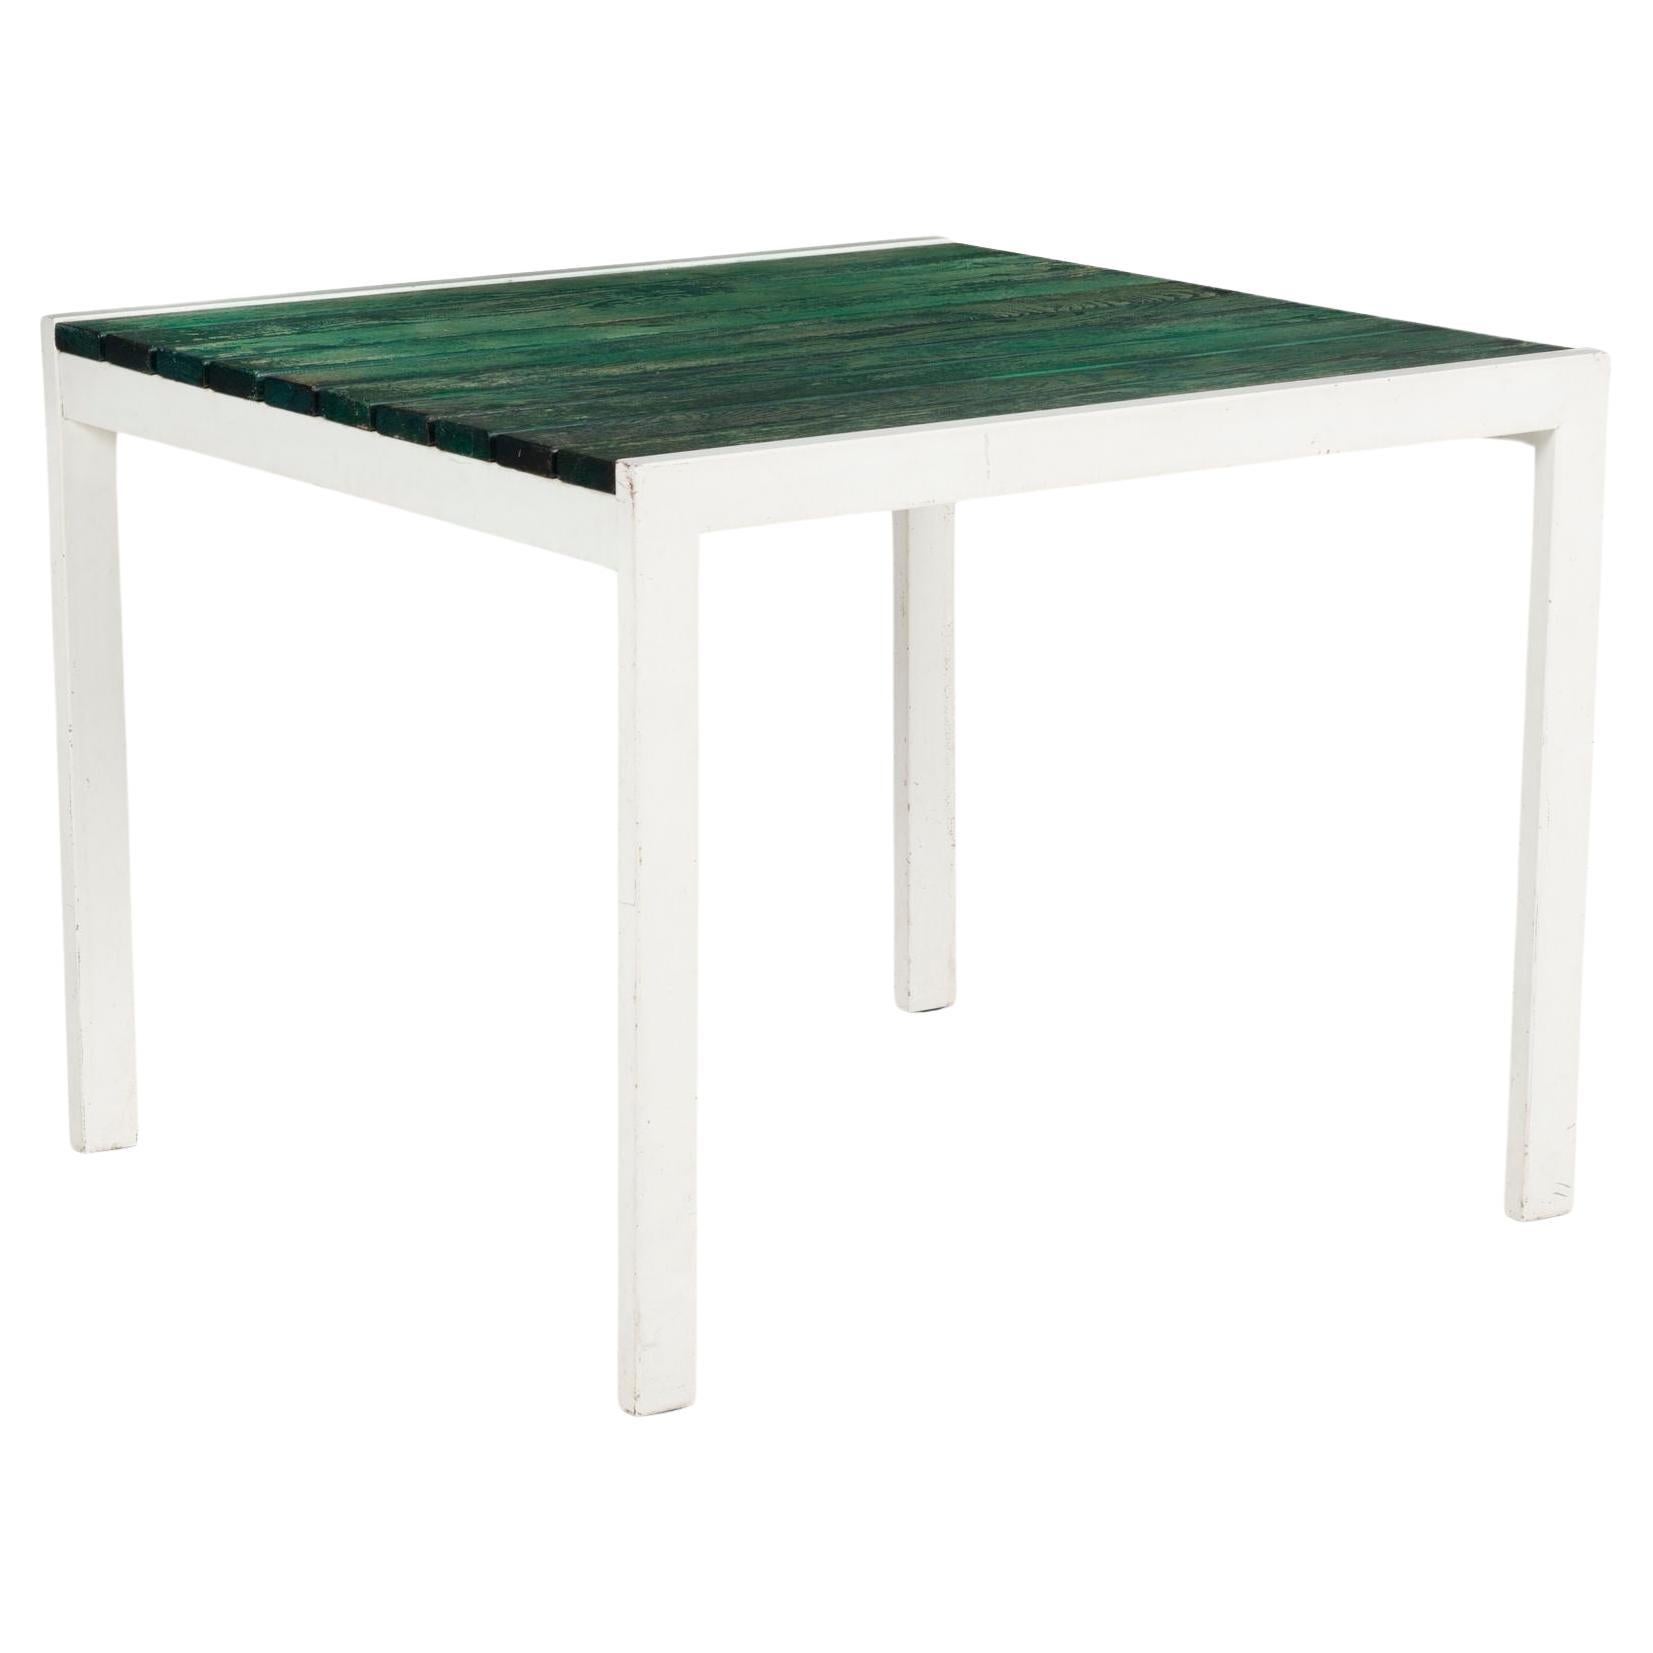 Van Keppel Green "VKG" Outdoor/ Indoor Table 1955c For Sale